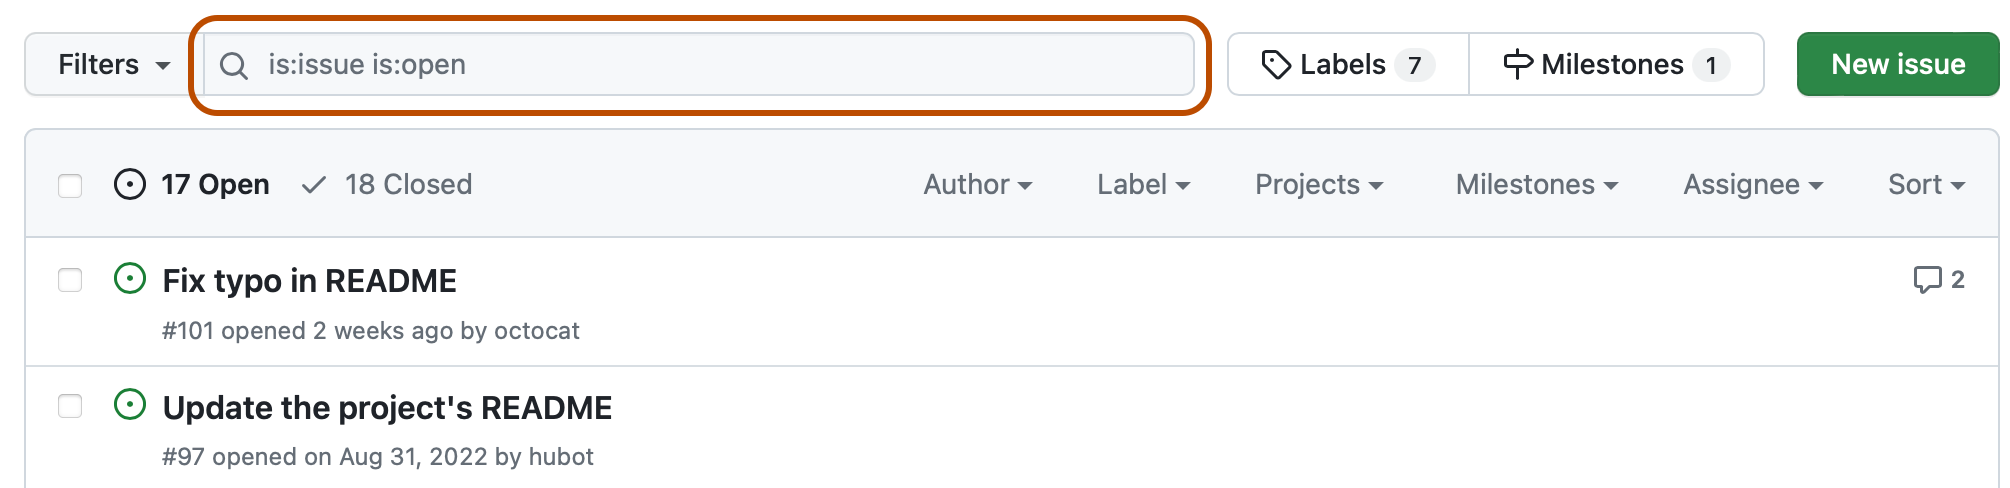 存储库问题列表的屏幕截图。 列表上方的搜索字段（包含查询“is:issue is:open”）以深橙色标出。